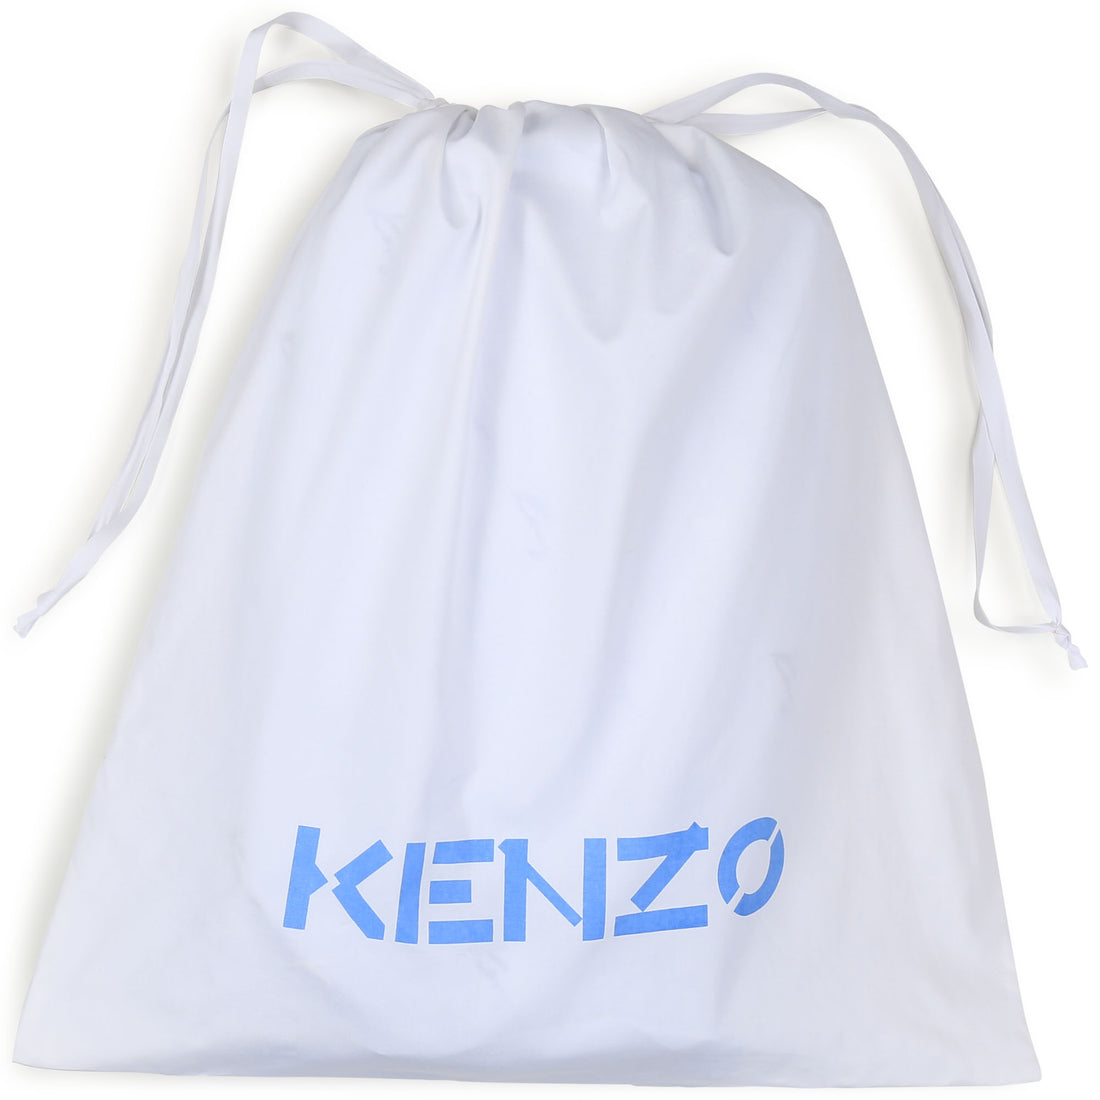 Kenzo Baby Sleeping Style: K90085